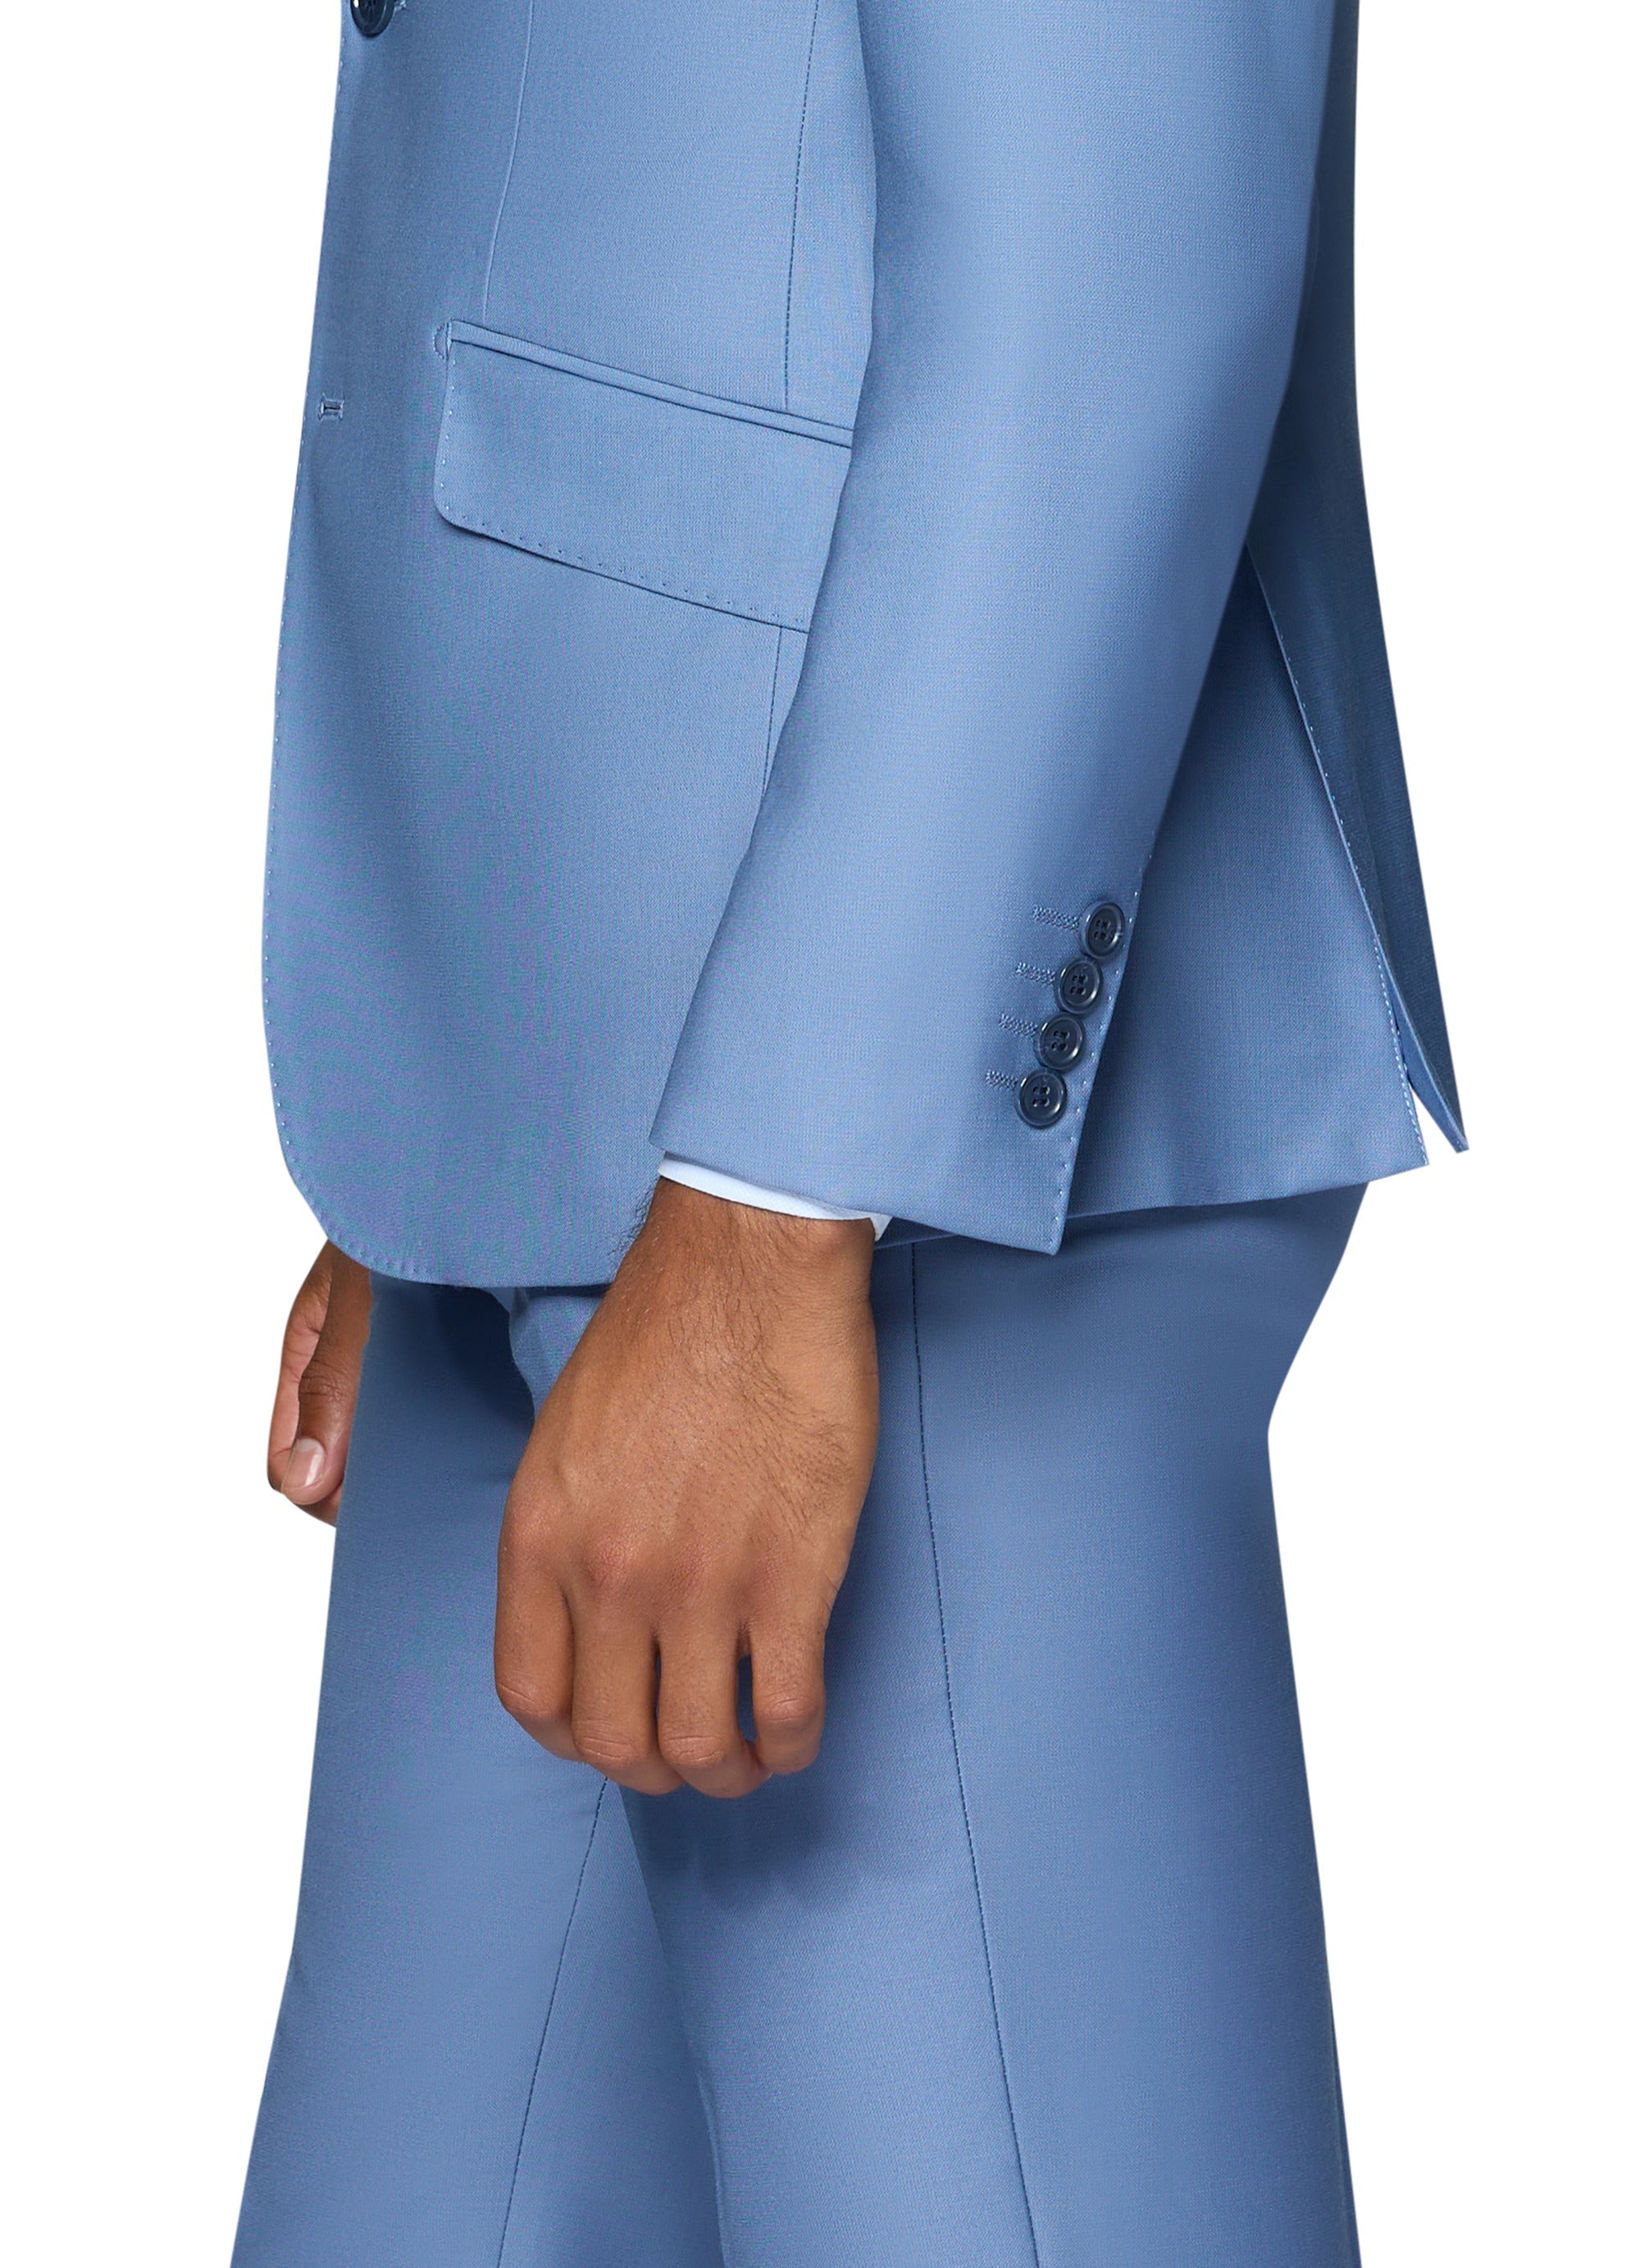 Berragamo Elegant - Faille Wool Solid Suit Slim - Light Blue